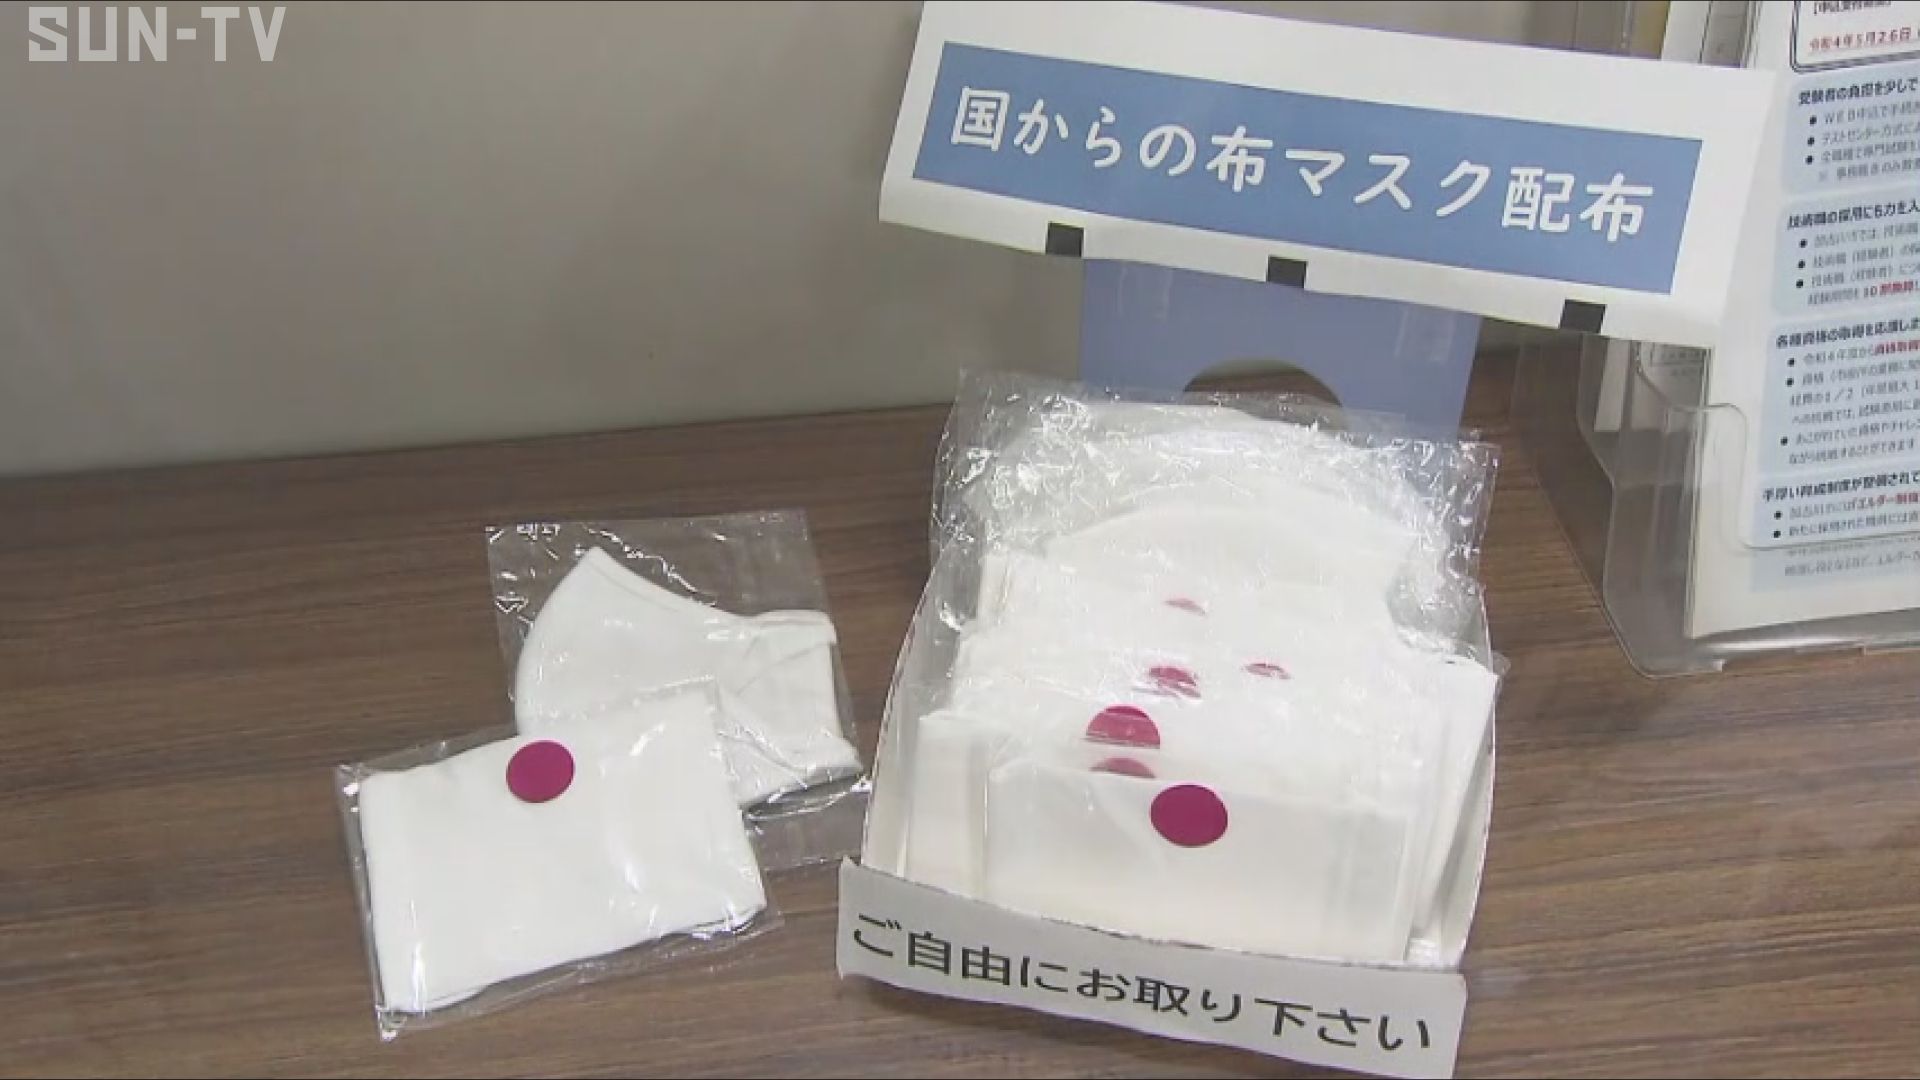 加古川市がアベノマスクを無料配布 | サンテレビニュース